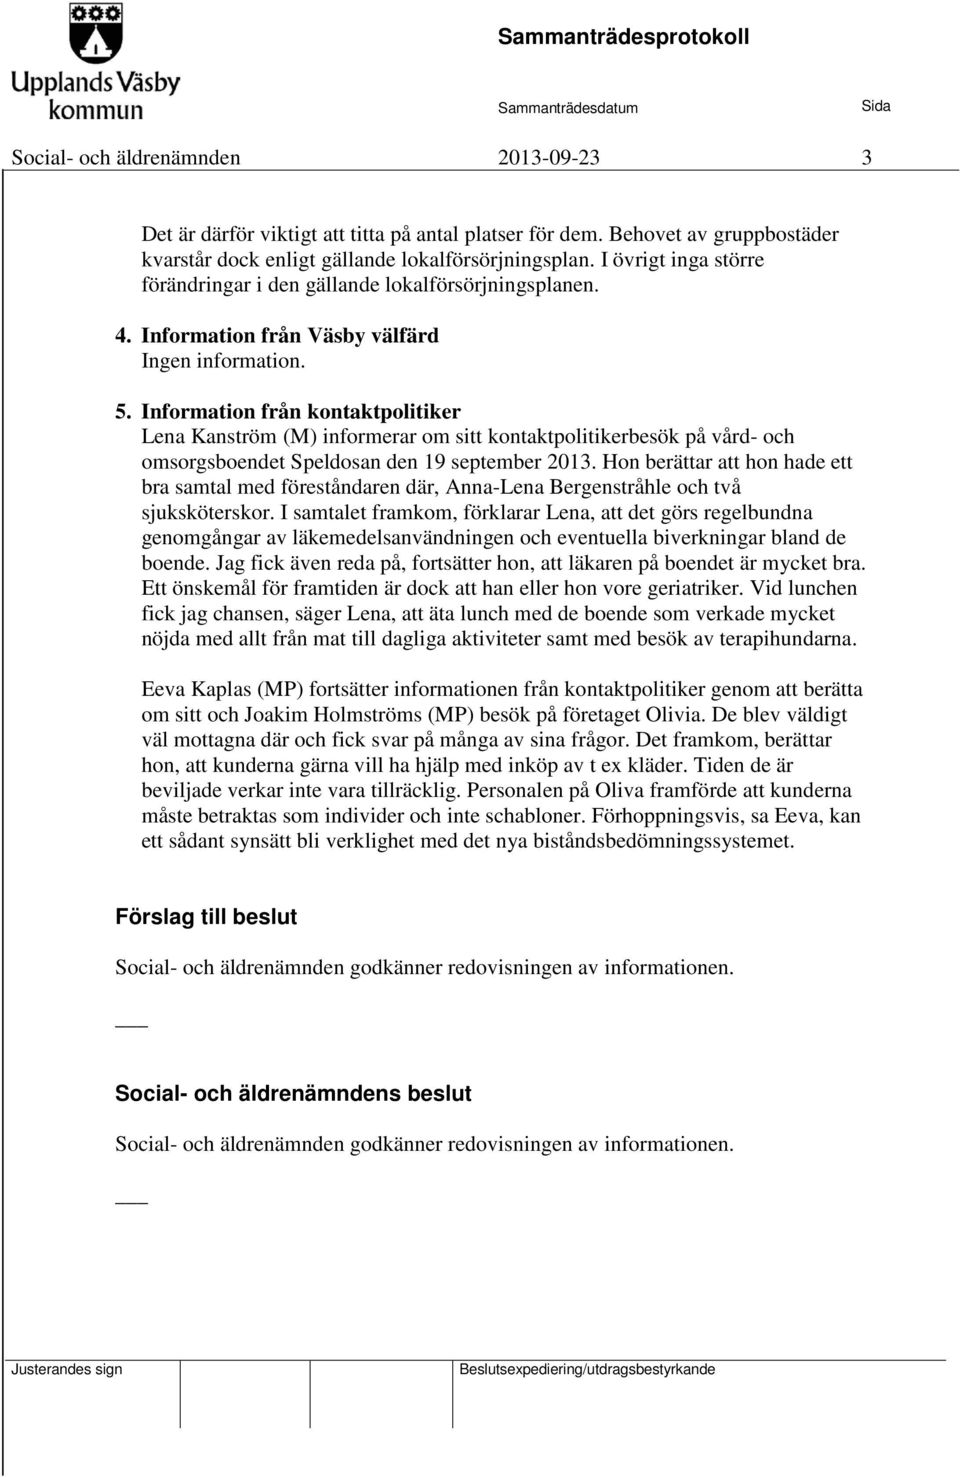 Information från kontaktpolitiker Lena Kanström (M) informerar om sitt kontaktpolitikerbesök på vård- och omsorgsboendet Speldosan den 19 september 2013.